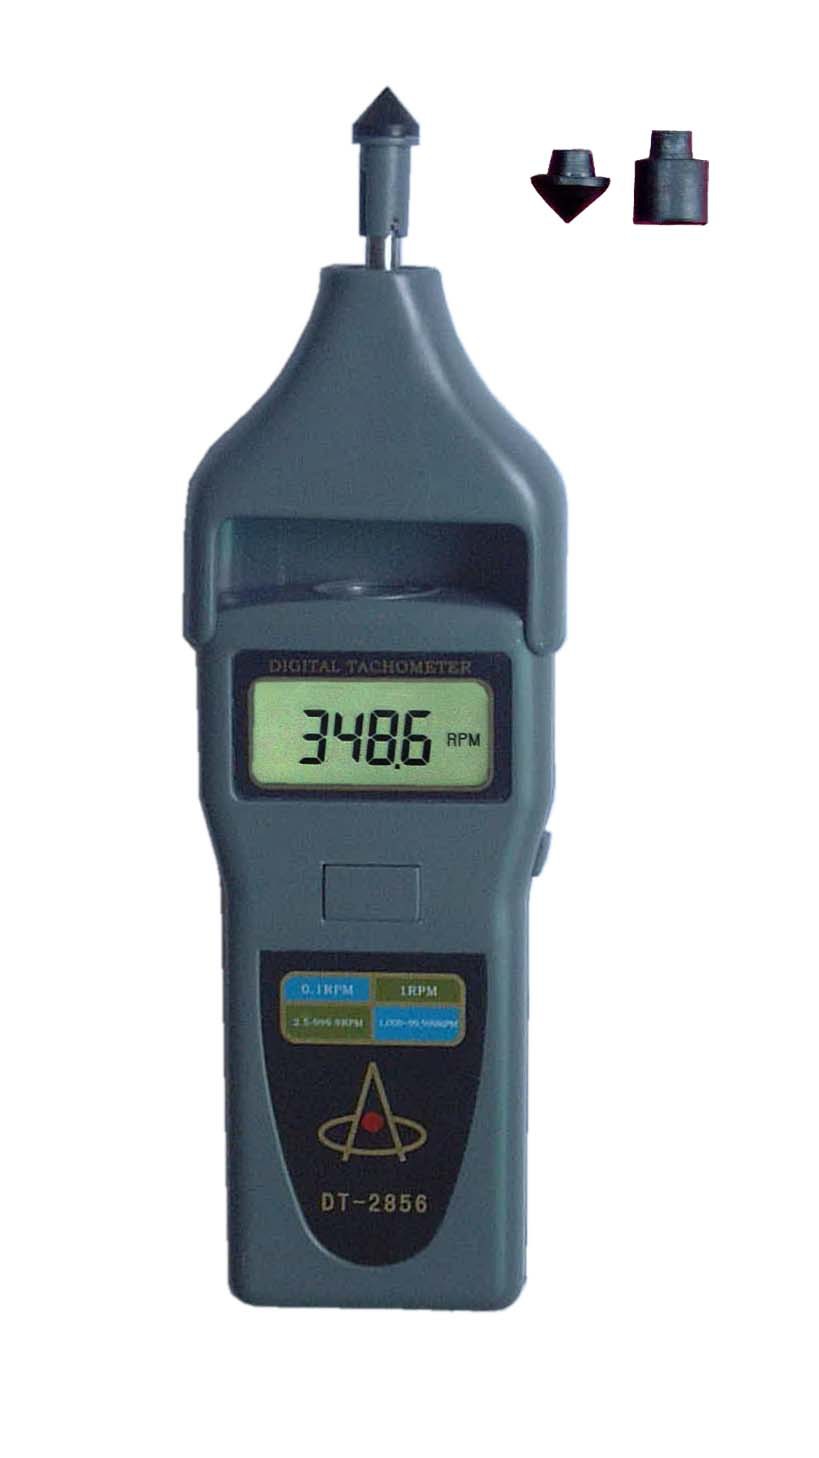 测量电机线速/转速/频率的多功能转速表DT-2856